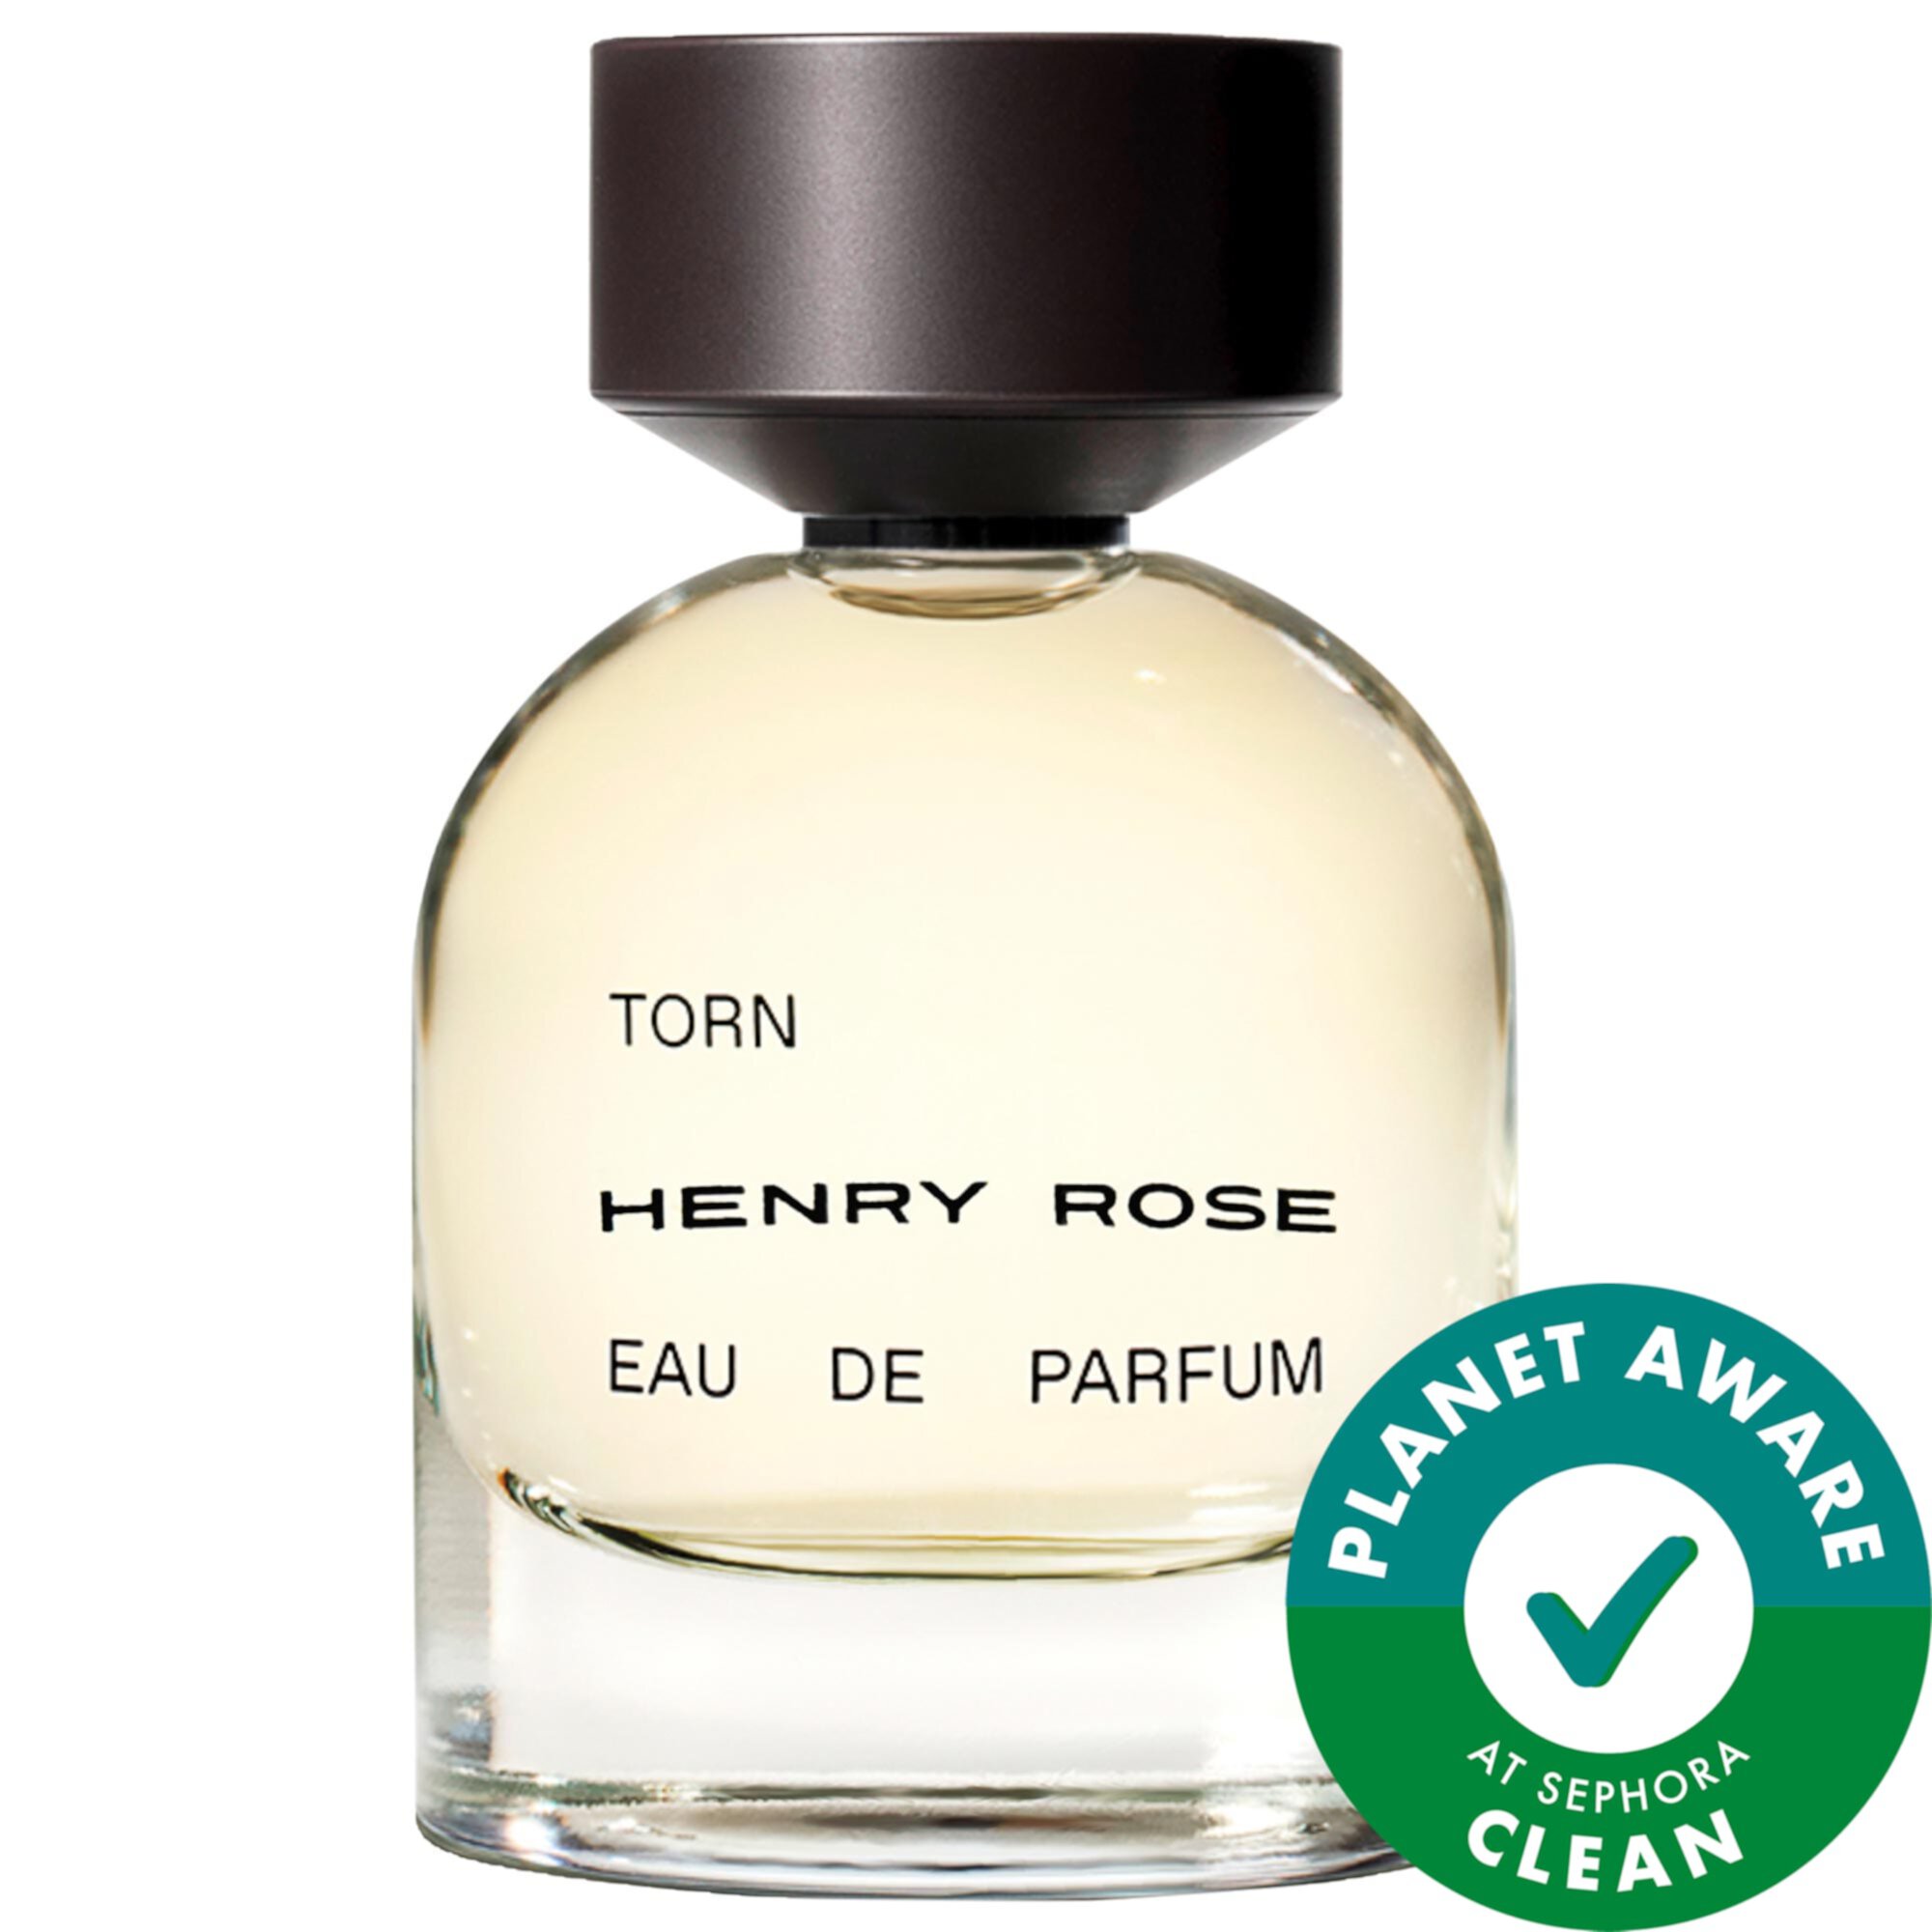 Torn Eau de Parfum Henry Rose